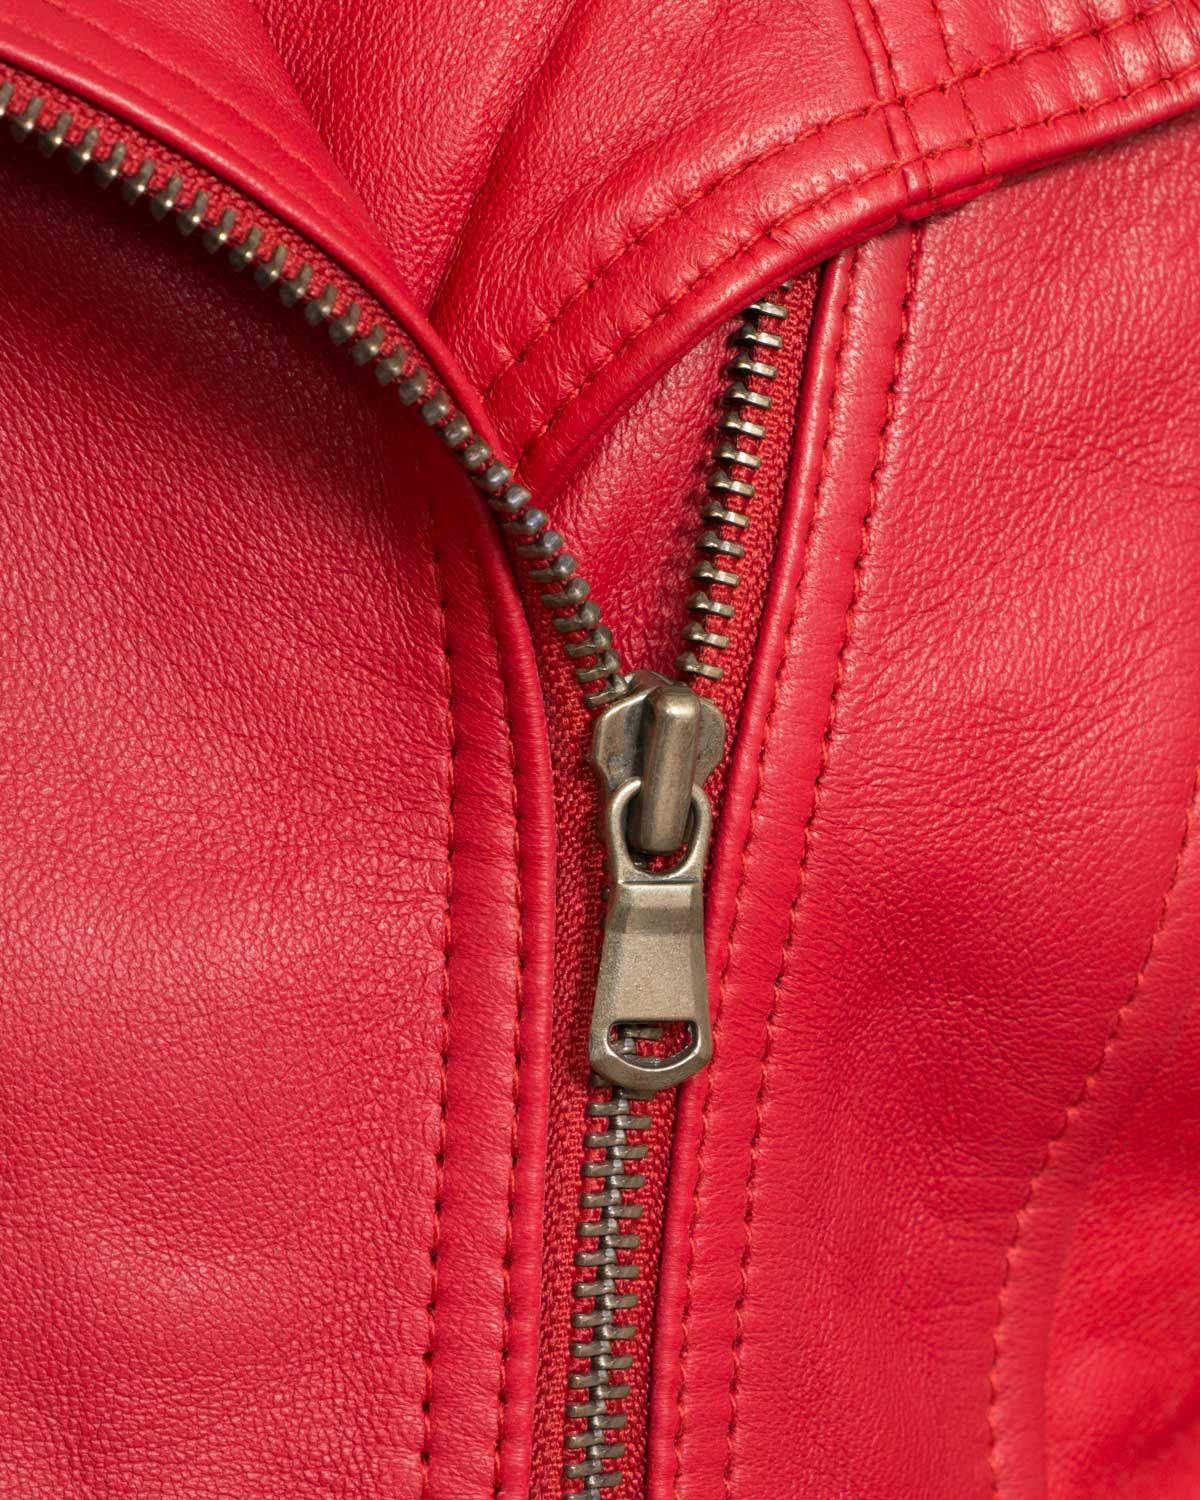 Women’s Red Biker Leather Jacket